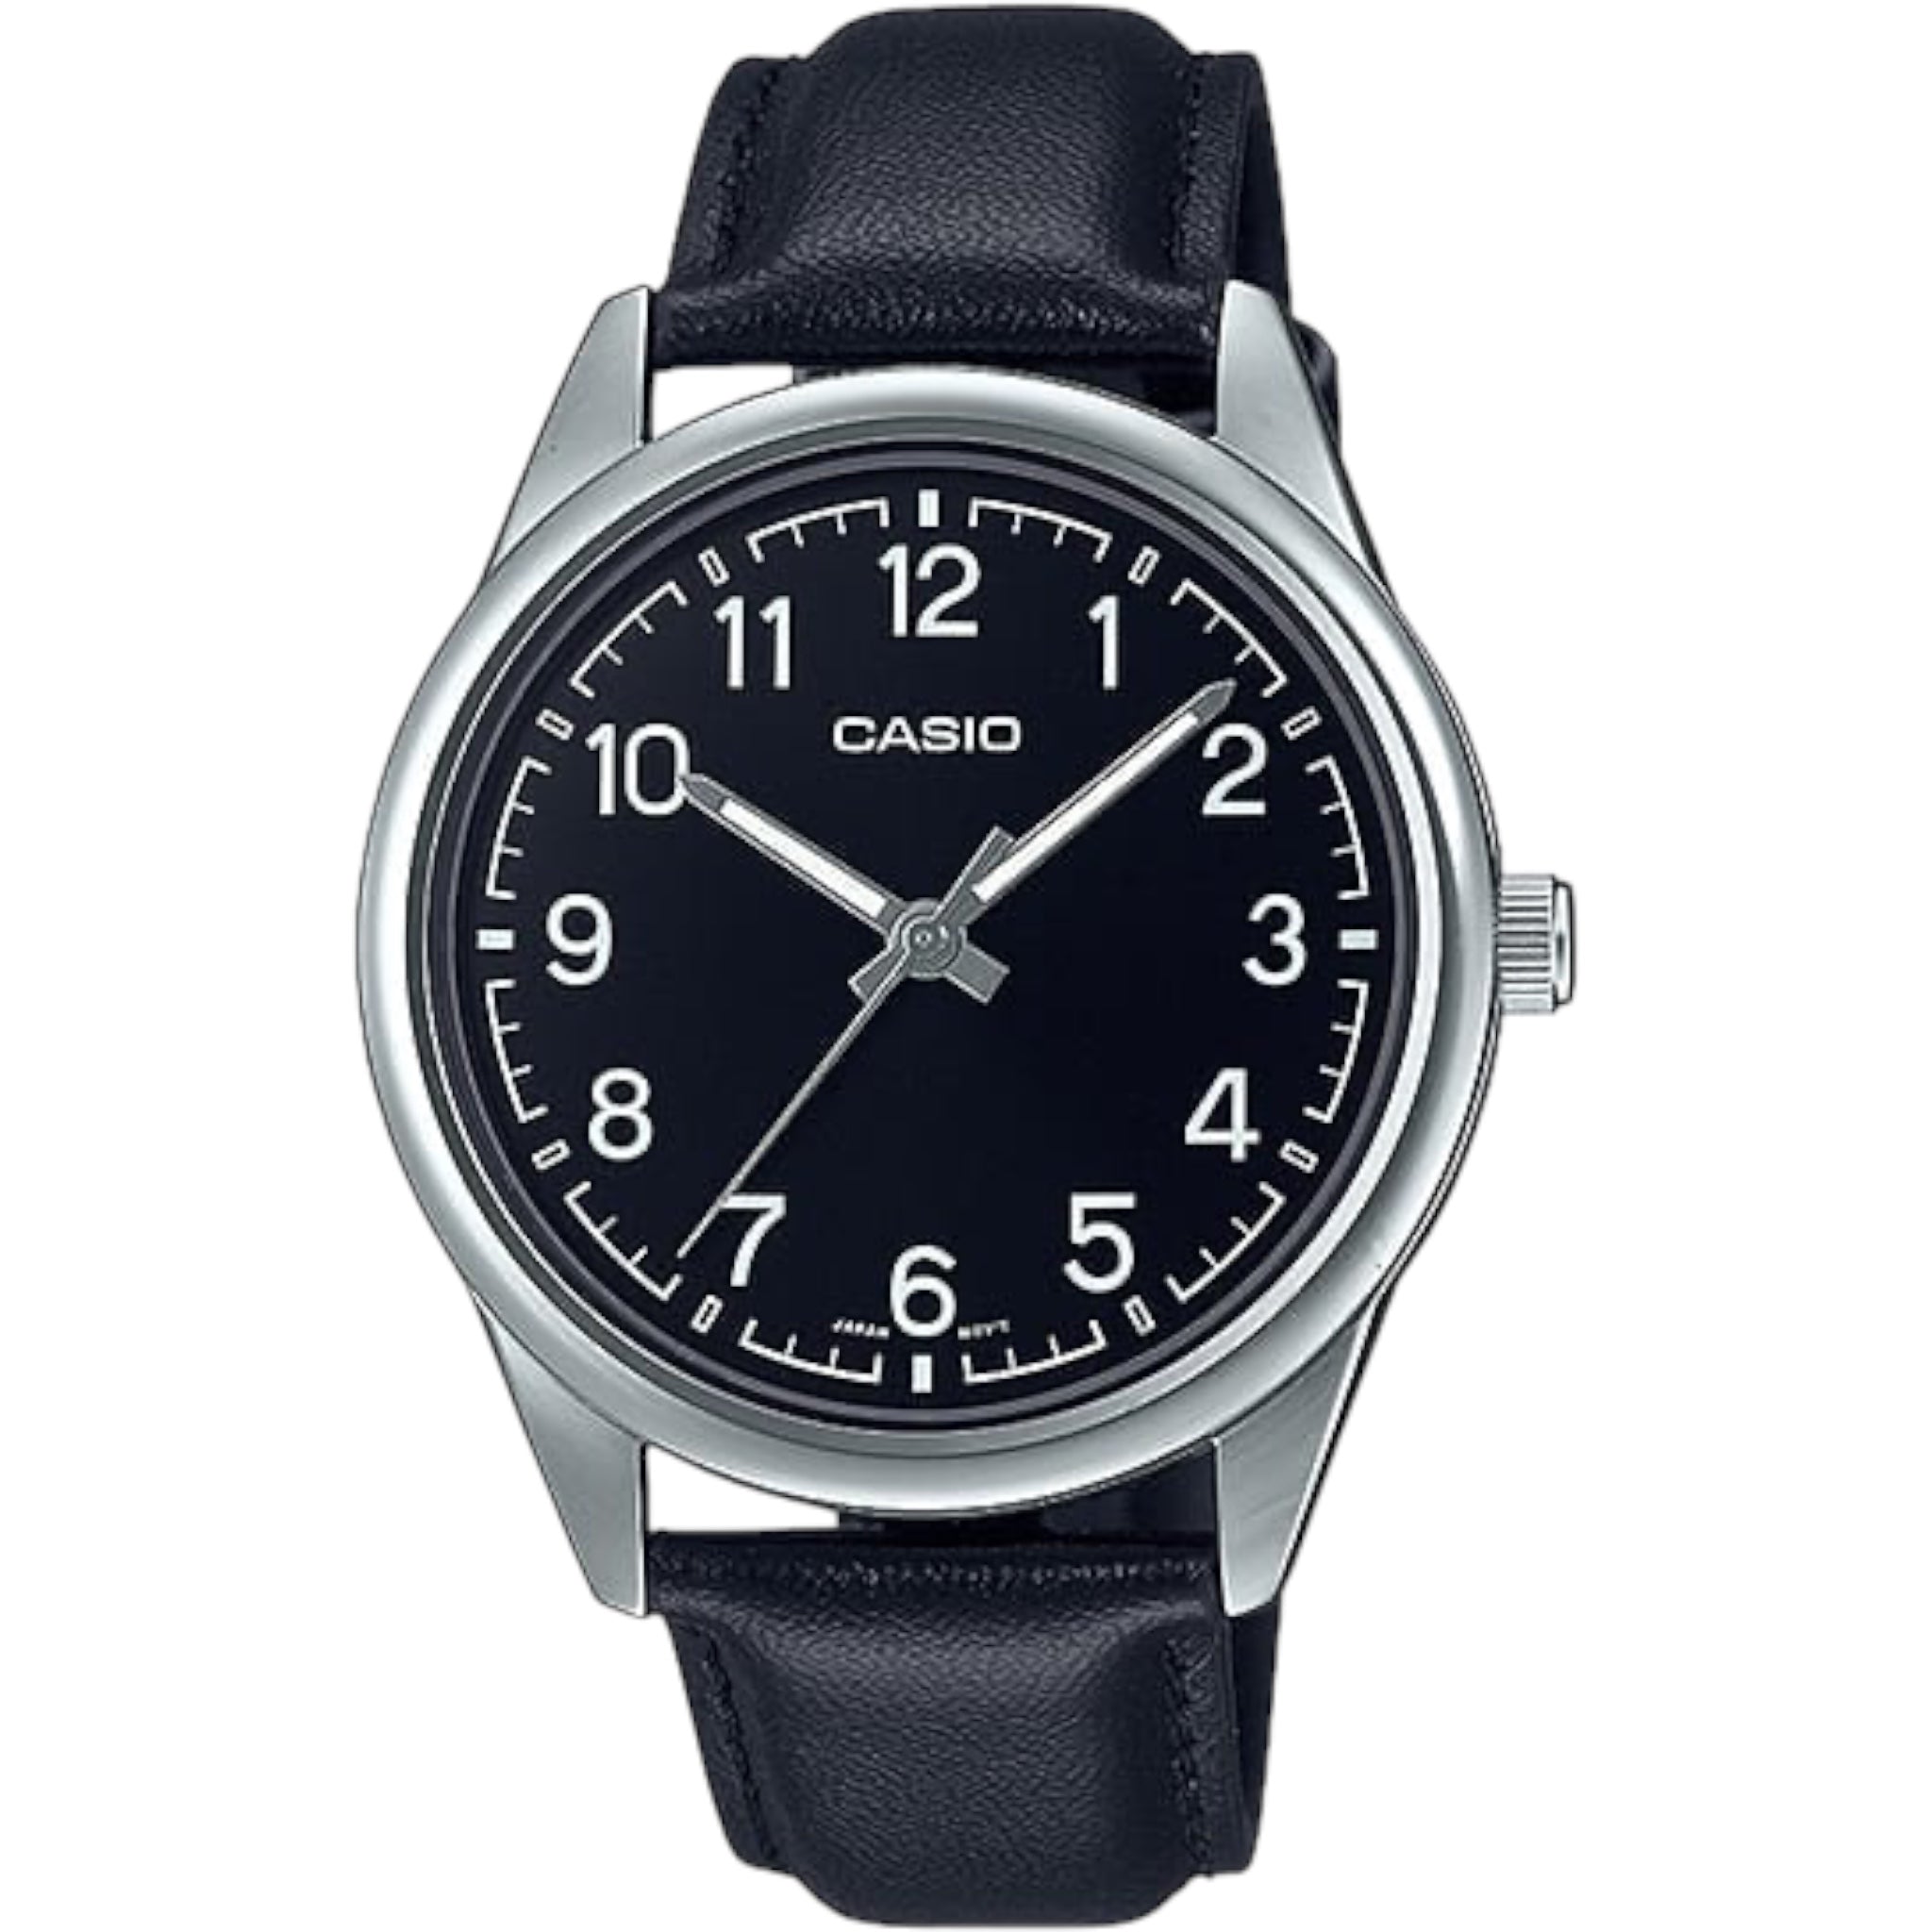 Casio Men's Watch MTP-V005L-1B4